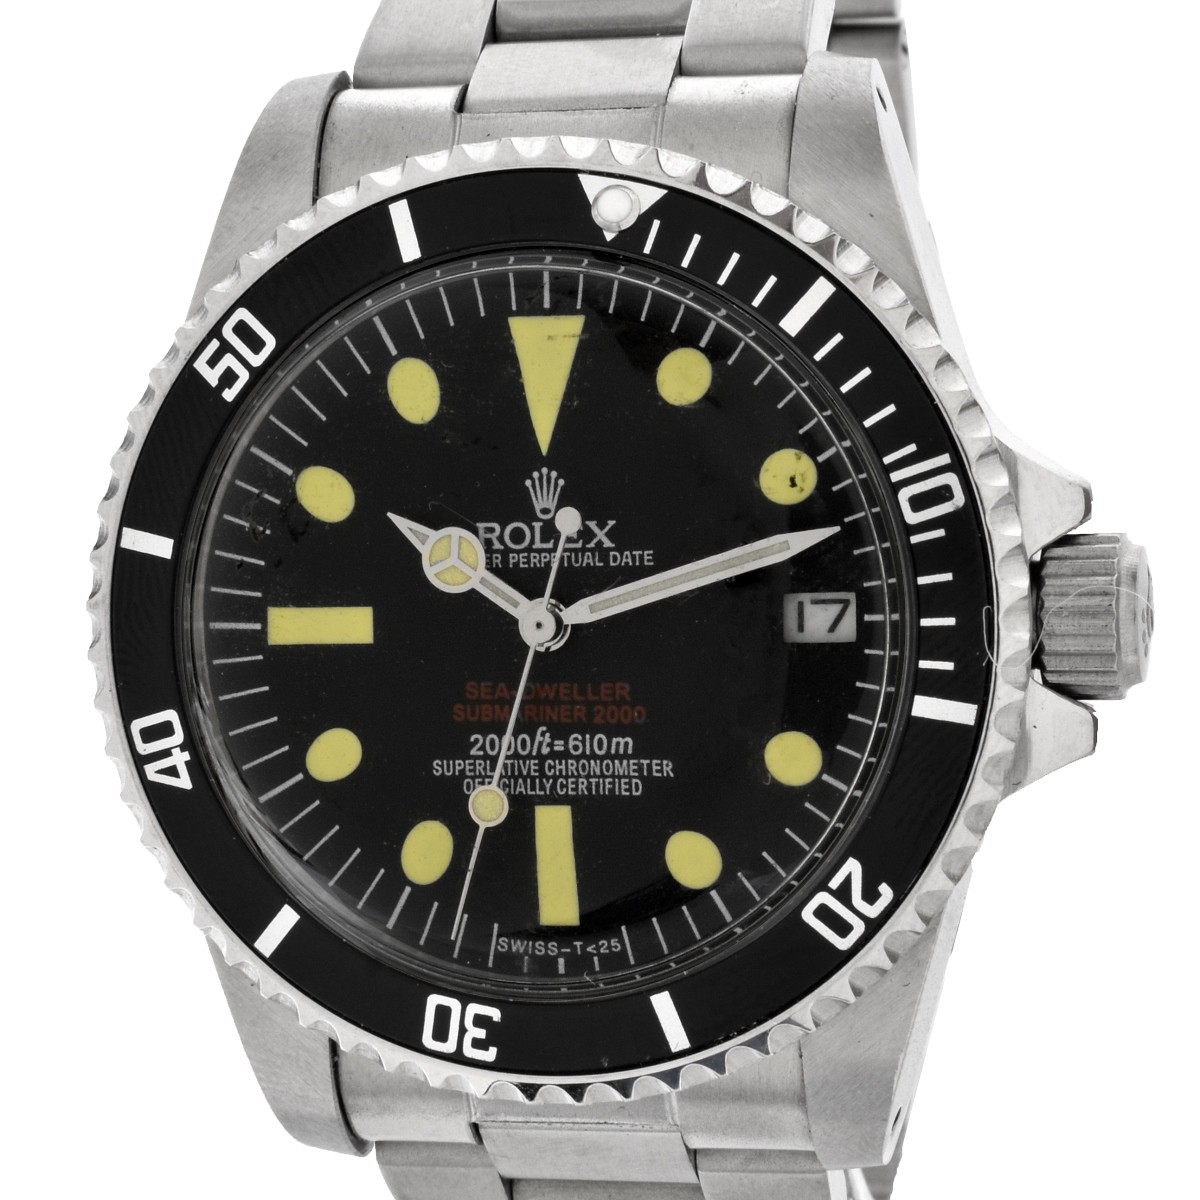 Replica "Rolex Sea-Dweller" Watch